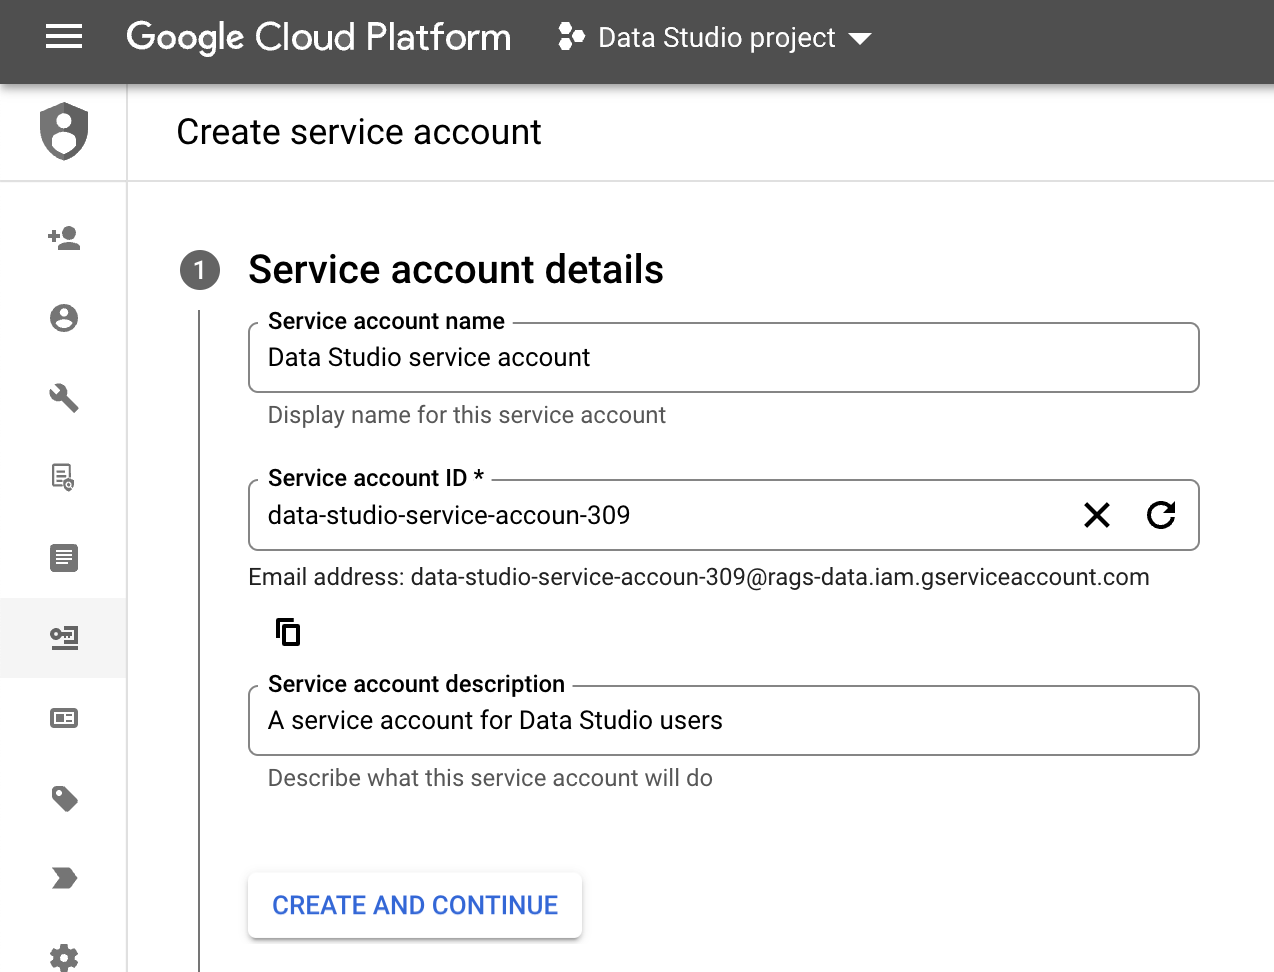 Ejemplo de la interfaz de Google Cloud Platform, donde se muestra el paso 1 de la página "Crear una cuenta de servicio": Detalles de la cuenta de servicio. En el campo del nombre de la cuenta de servicio se muestra el texto "Cuenta de servicio de Looker Studio". El ID de la cuenta de servicio es "data-studio-service-accoun-309". En el campo Descripción de la cuenta de servicio se muestra el texto "Una cuenta de servicio para los usuarios de Looker Studio". El botón CREAR Y CONTINUAR aparece resaltado.